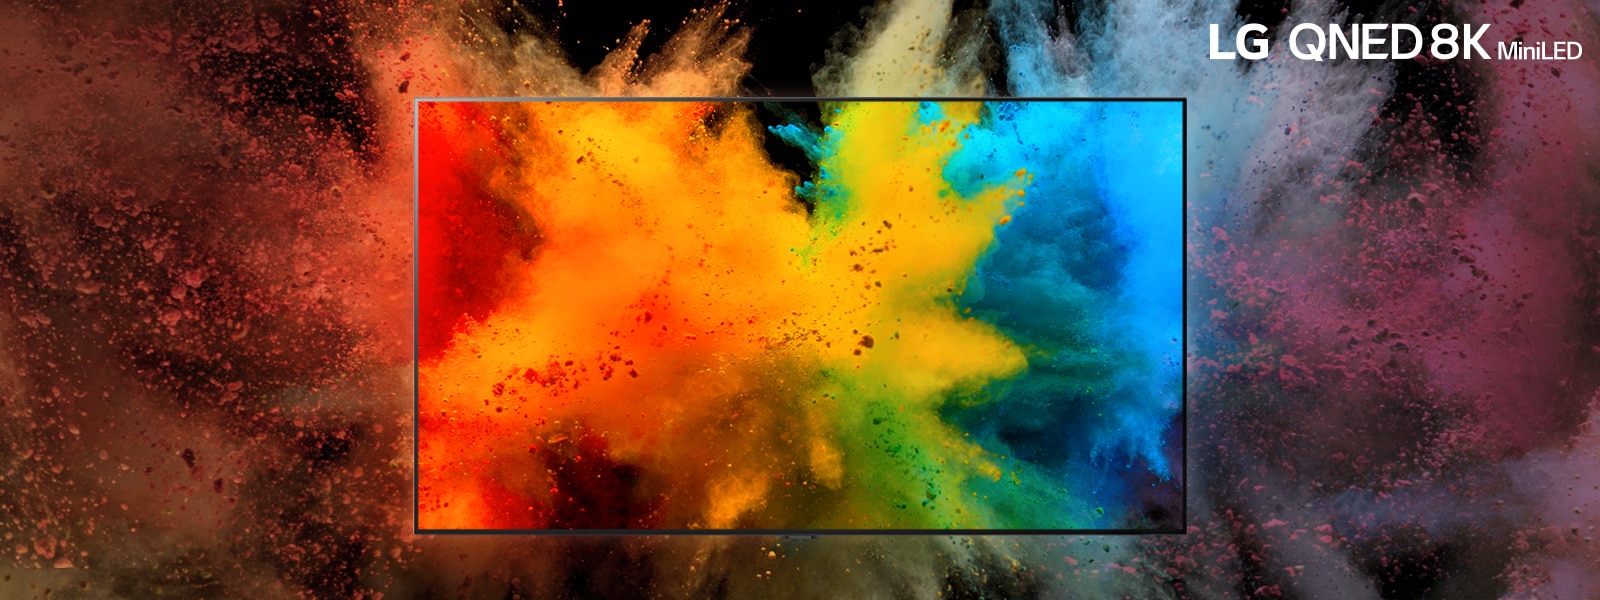 Un LG QNED dans une pièce sombre.  Les poudres colorées créent une explosion de couleurs arc-en-ciel sur le téléviseur.